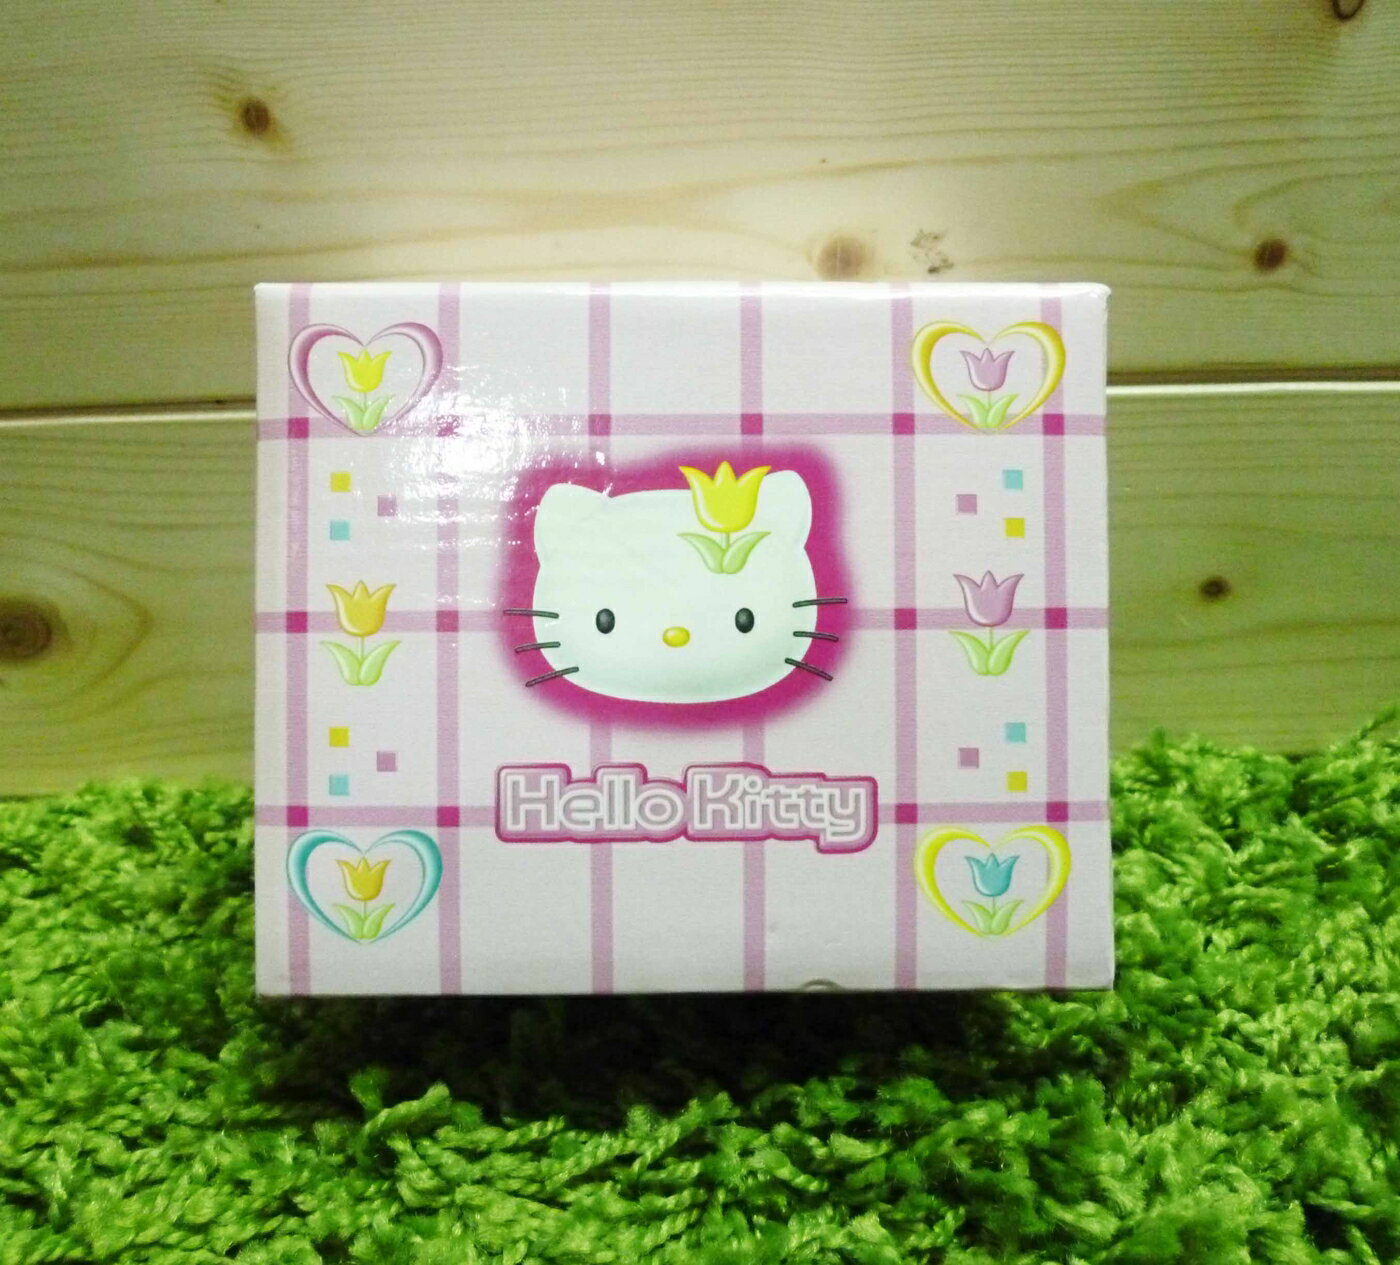 【震撼精品百貨】Hello Kitty 凱蒂貓 便條紙附整理盒-鬱金香圖案【共1款】 震撼日式精品百貨